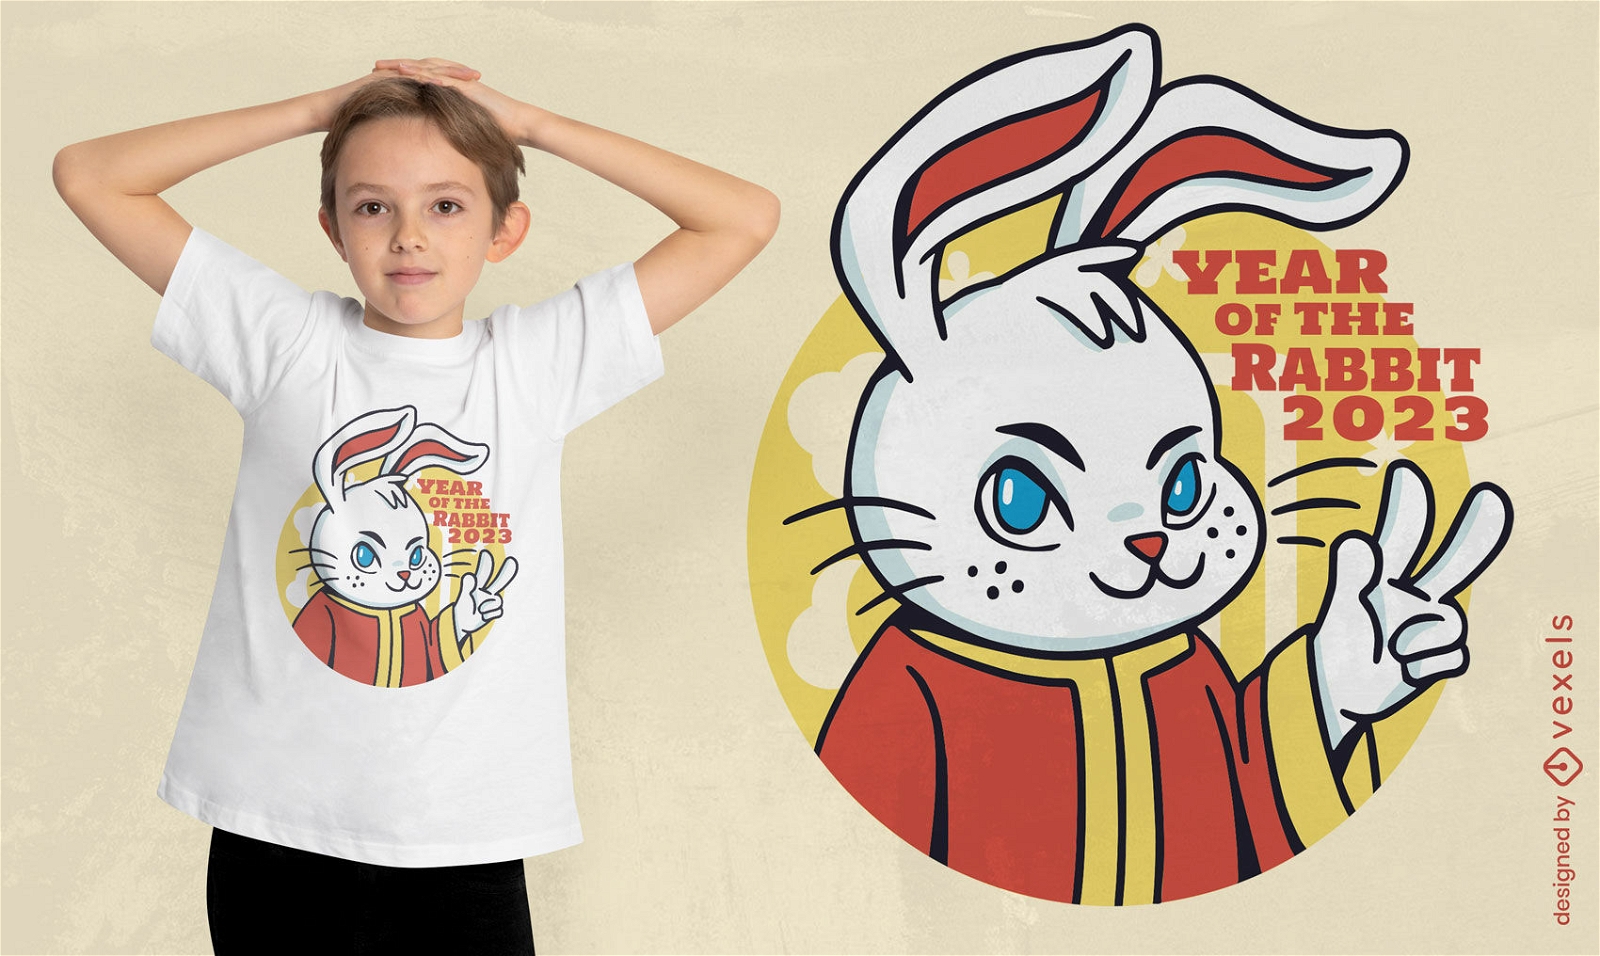 Dise?o de camiseta de conejo para el a?o nuevo chino.